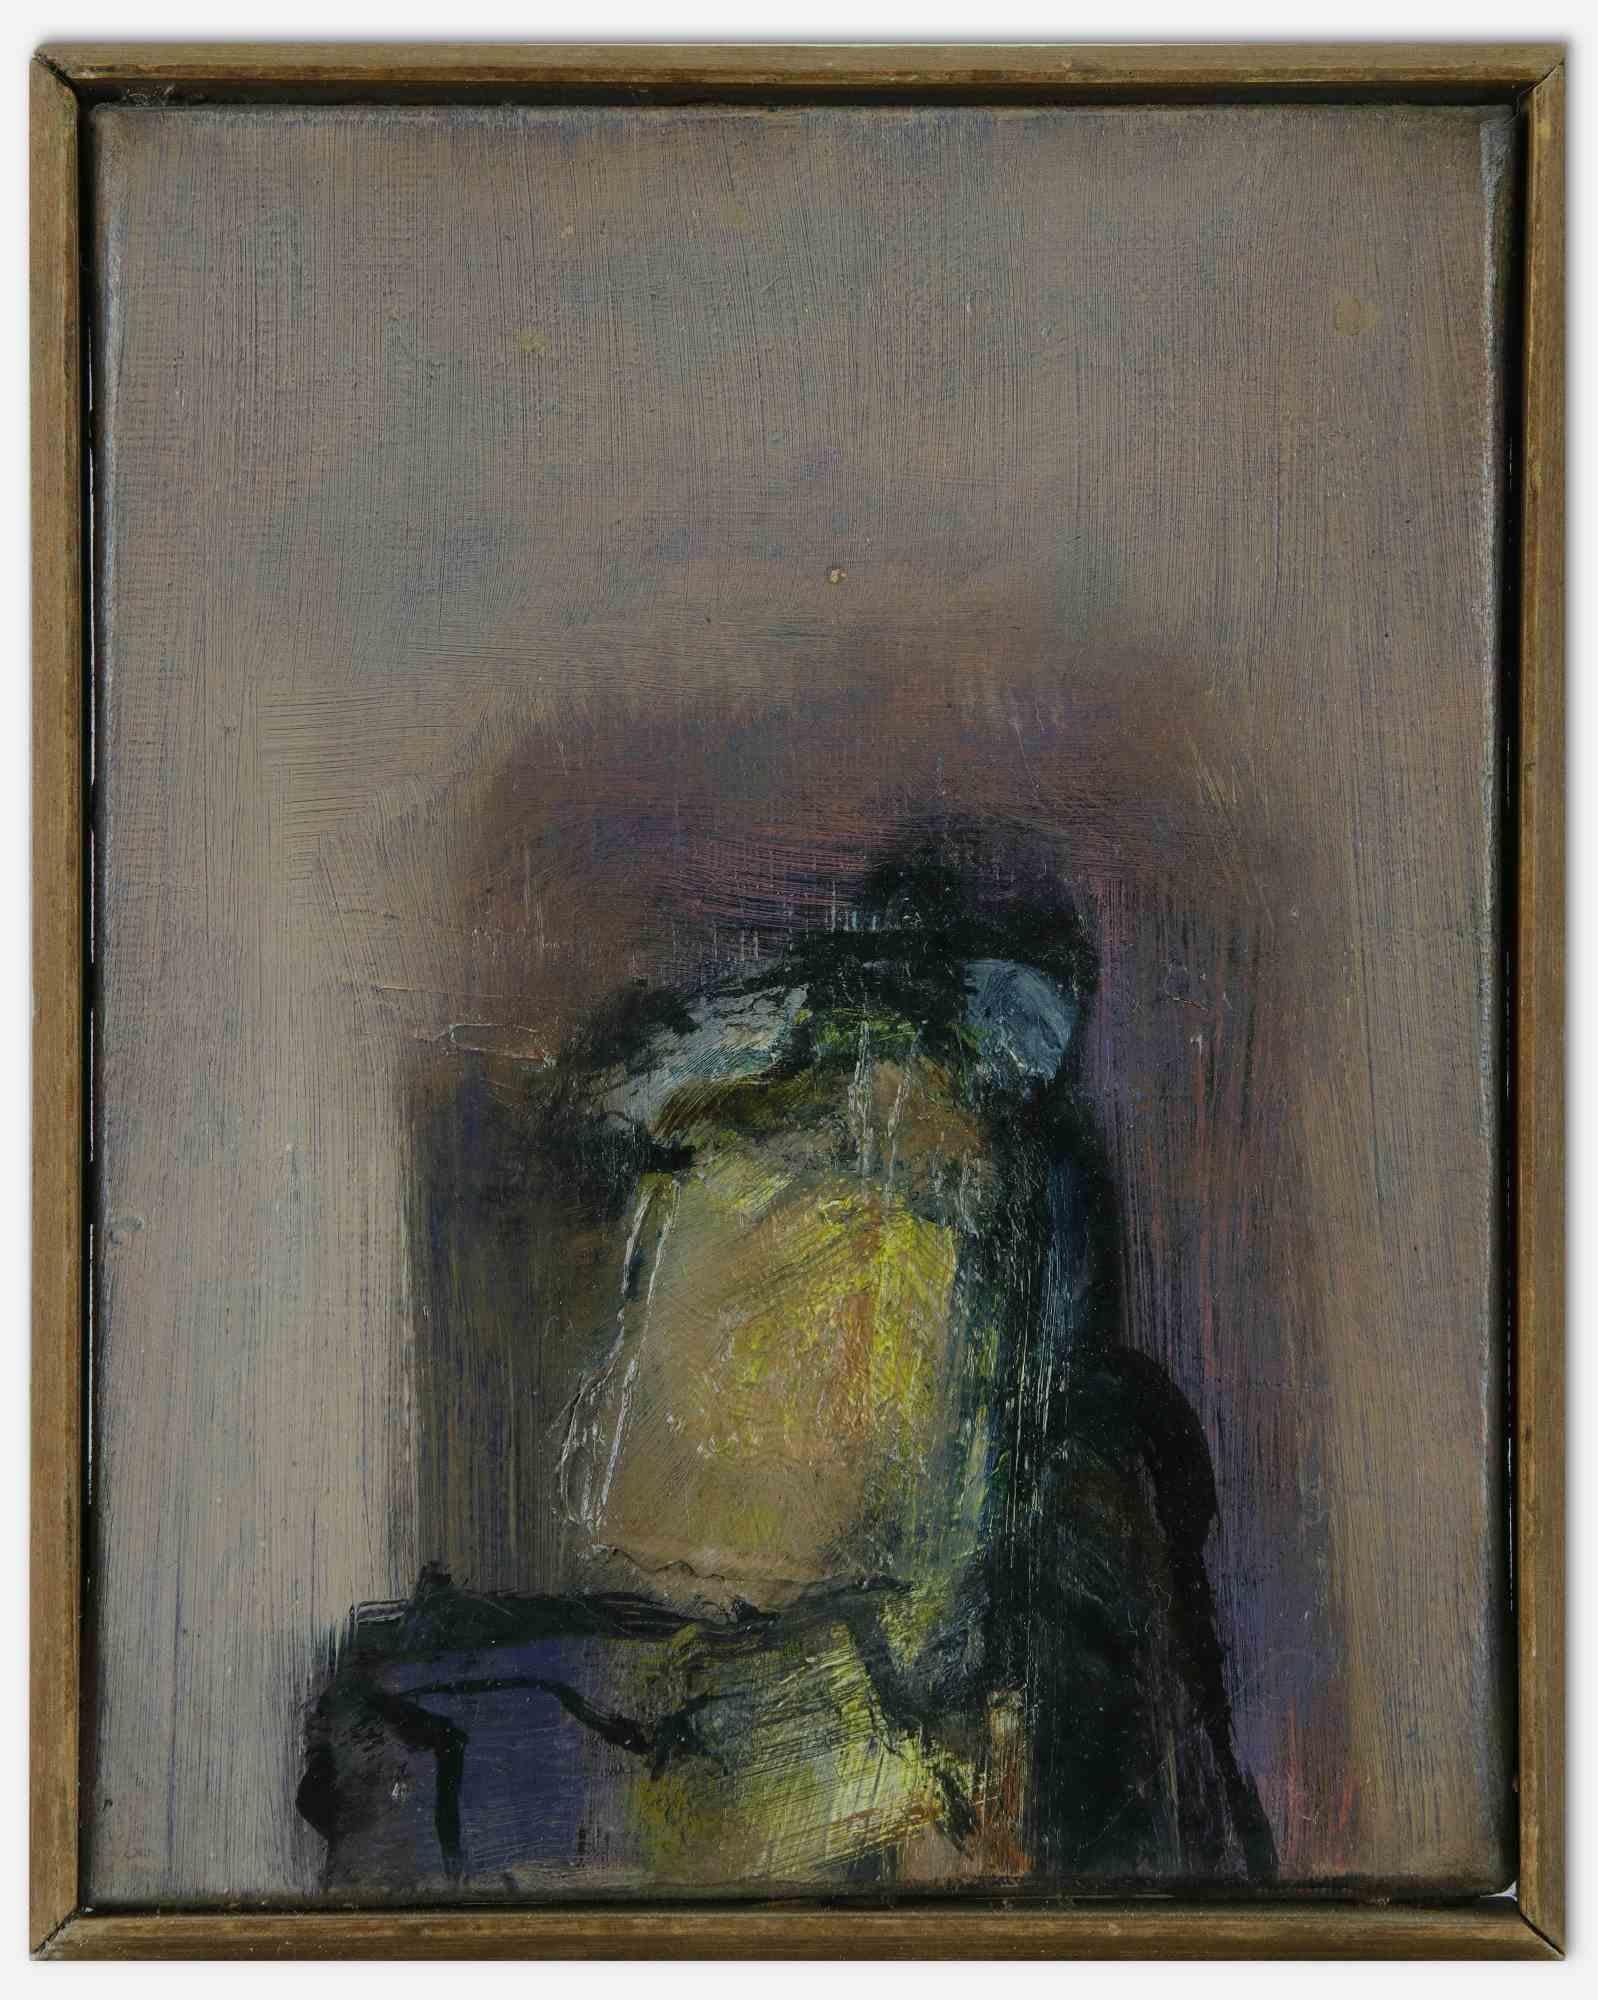 Abstract Figure ist ein originales zeitgenössisches Kunstwerk, das von dem Künstler Behçet Safa (1934-2018) realisiert wurde.

Gemischtes farbiges Öl auf Leinwand.

Handsigniert und datiert auf der Rückseite.